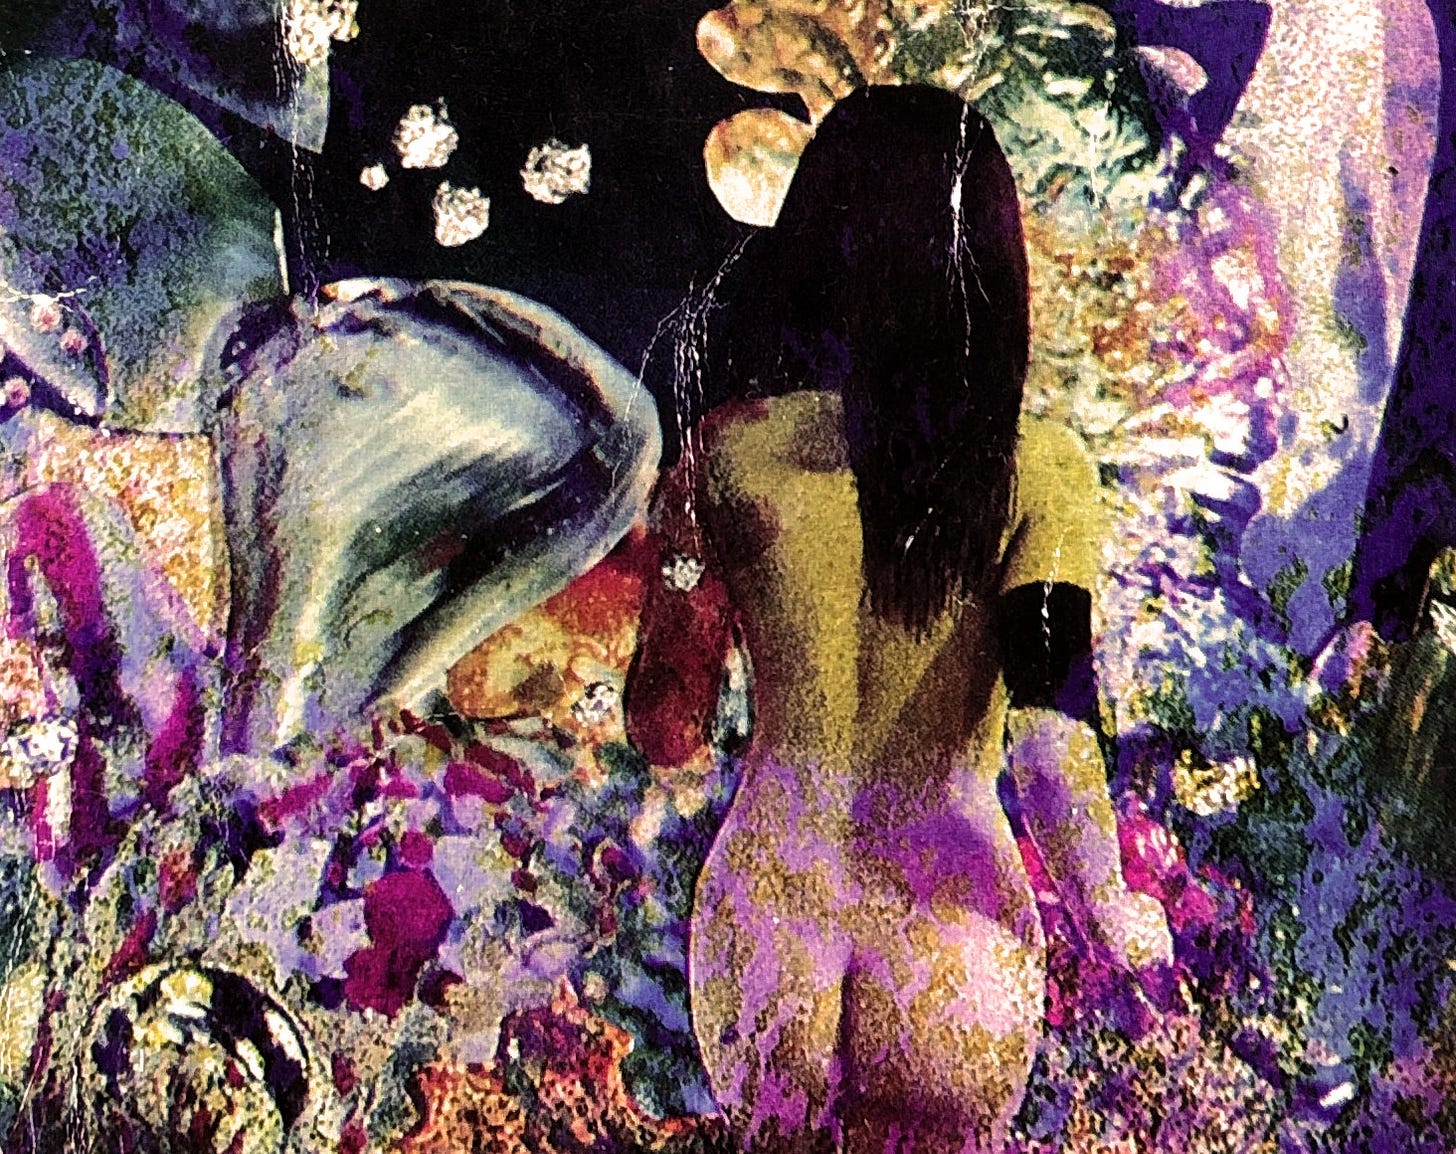 dettaglio dell'illustrazione di copertina dell'edizione inglese del 1973, pubblicata dalla Arrow Books, di Solaris di Stanislaw Lem, che ritrae di spalle una donna in abiti così discinti da essere limitati a una fascia nera sul braccio destro, che muove quelli che sembrano primi incerti sconcertati passi in un coacervo di vegetazione aliena